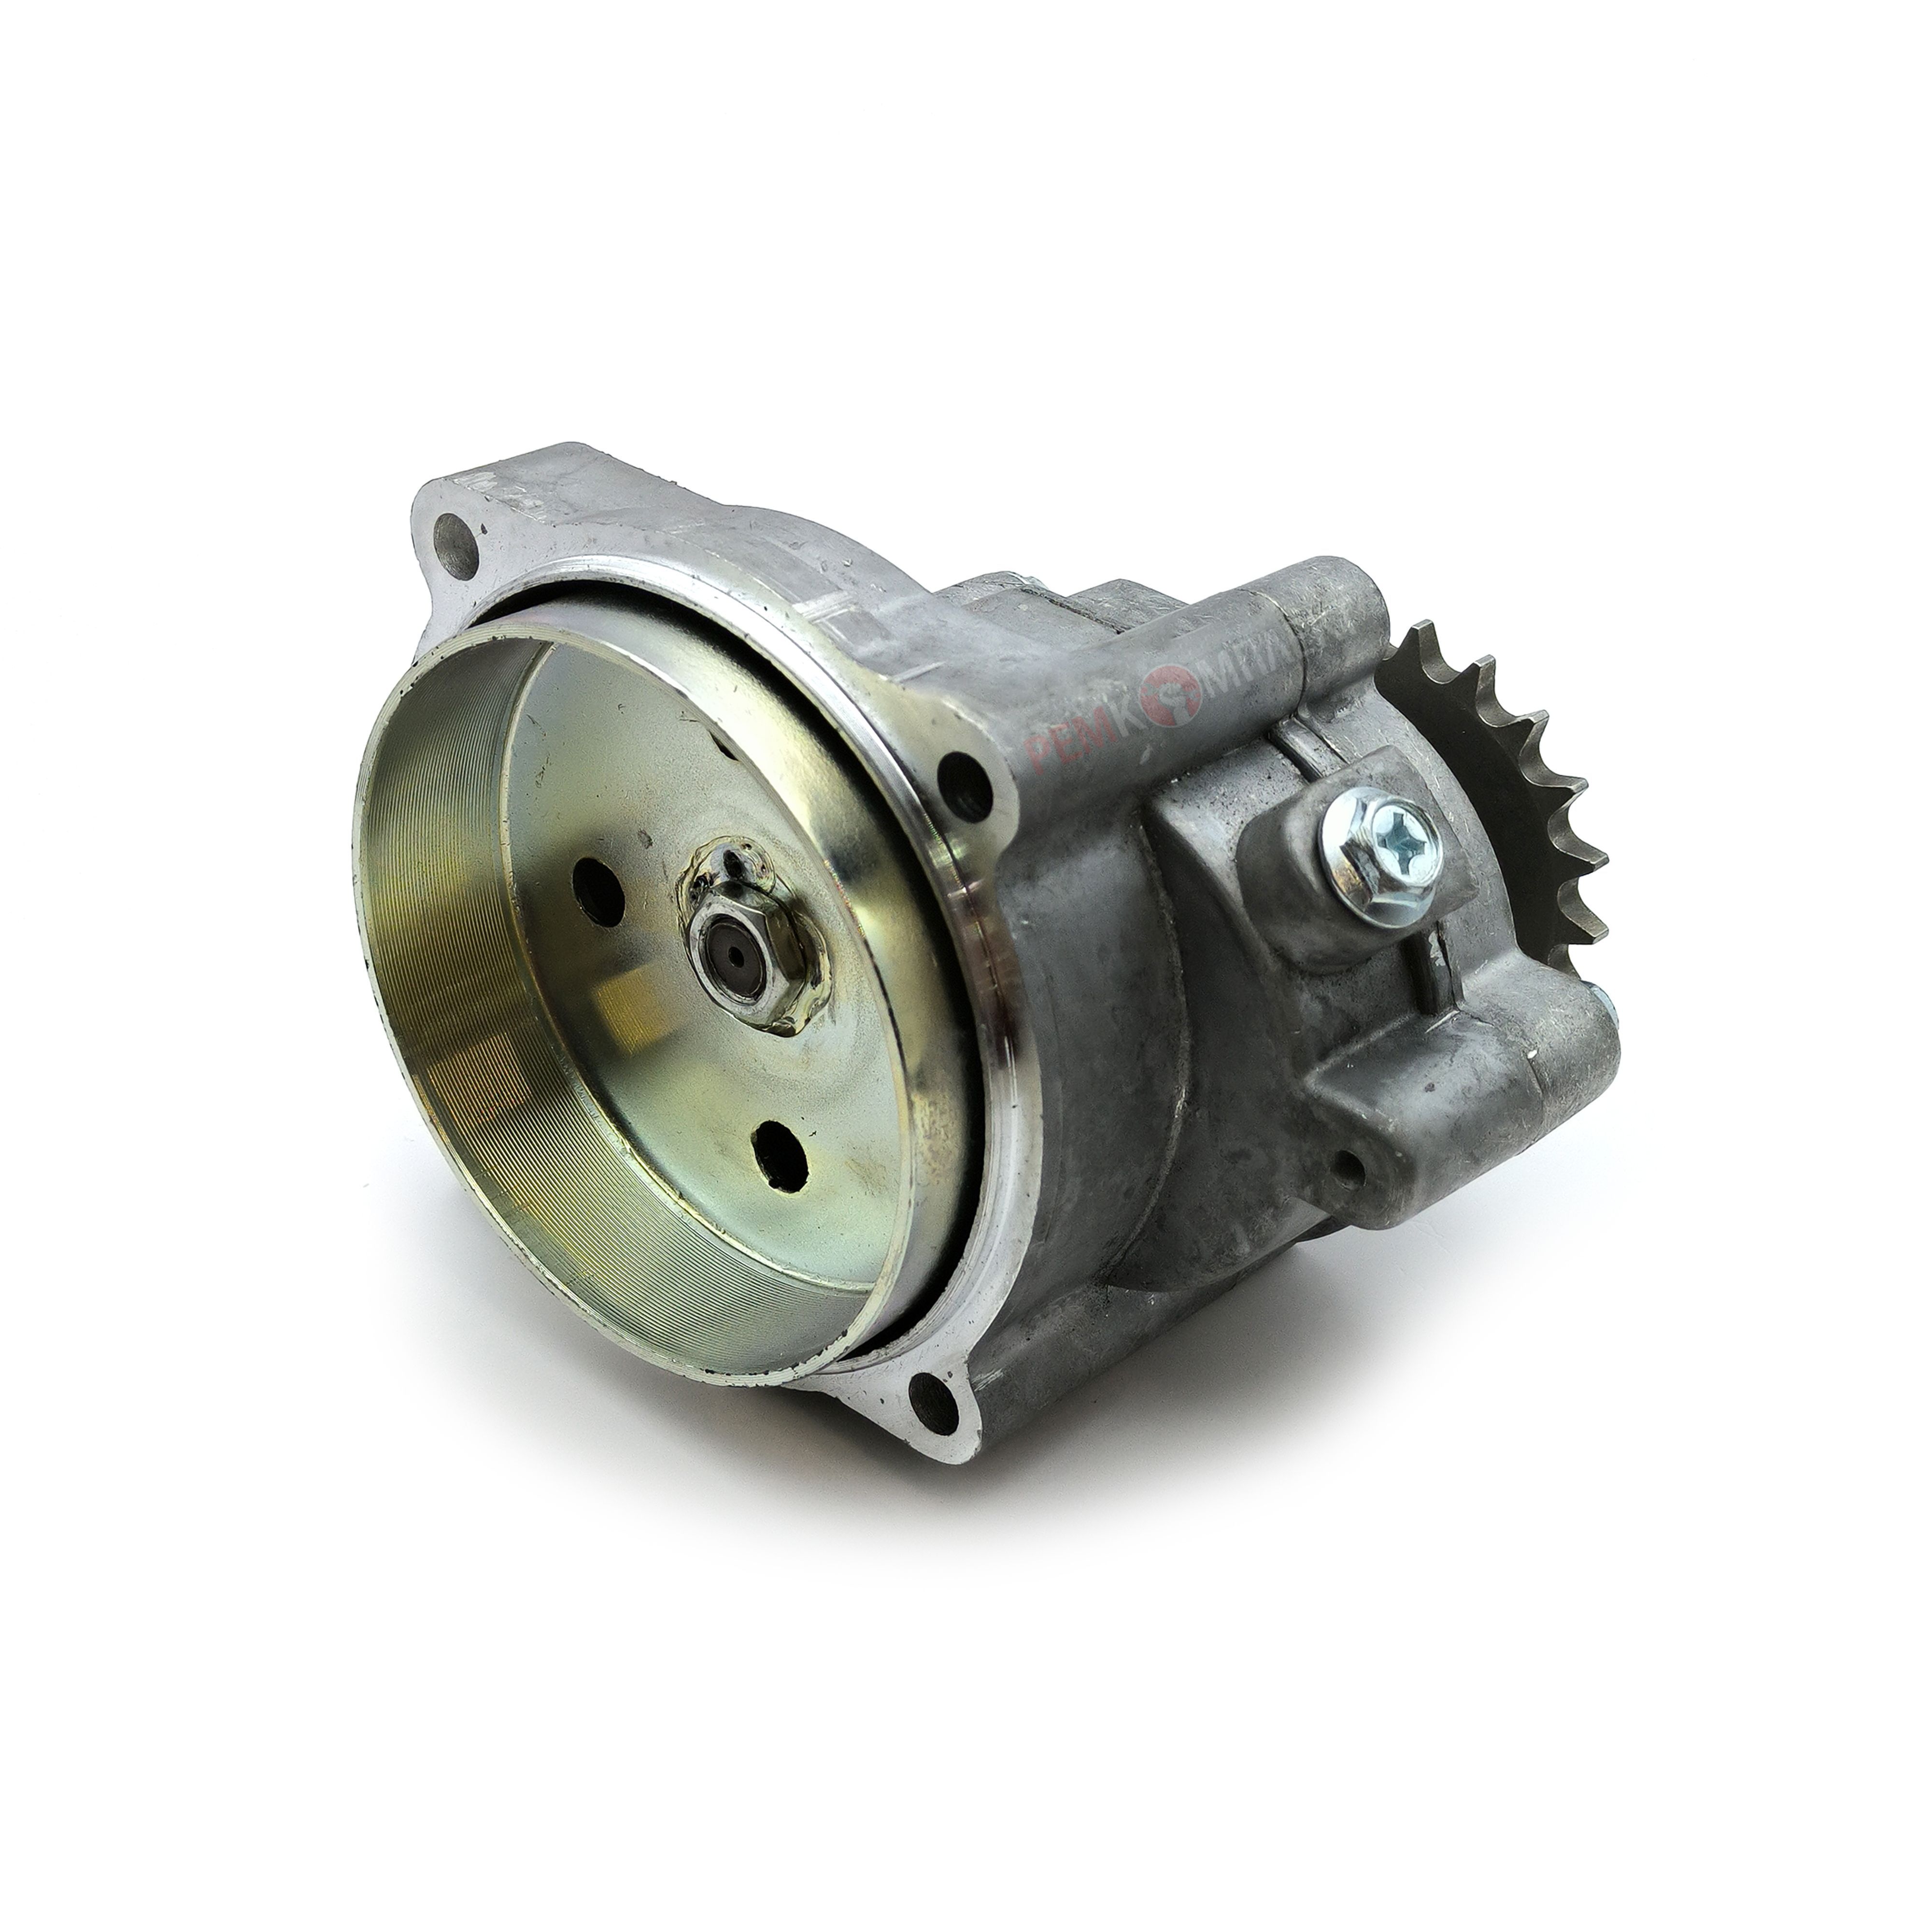 Червячный мотор-редуктор NMRV130 - 10:1 - 140.0 об/мин - 7.5 кВт